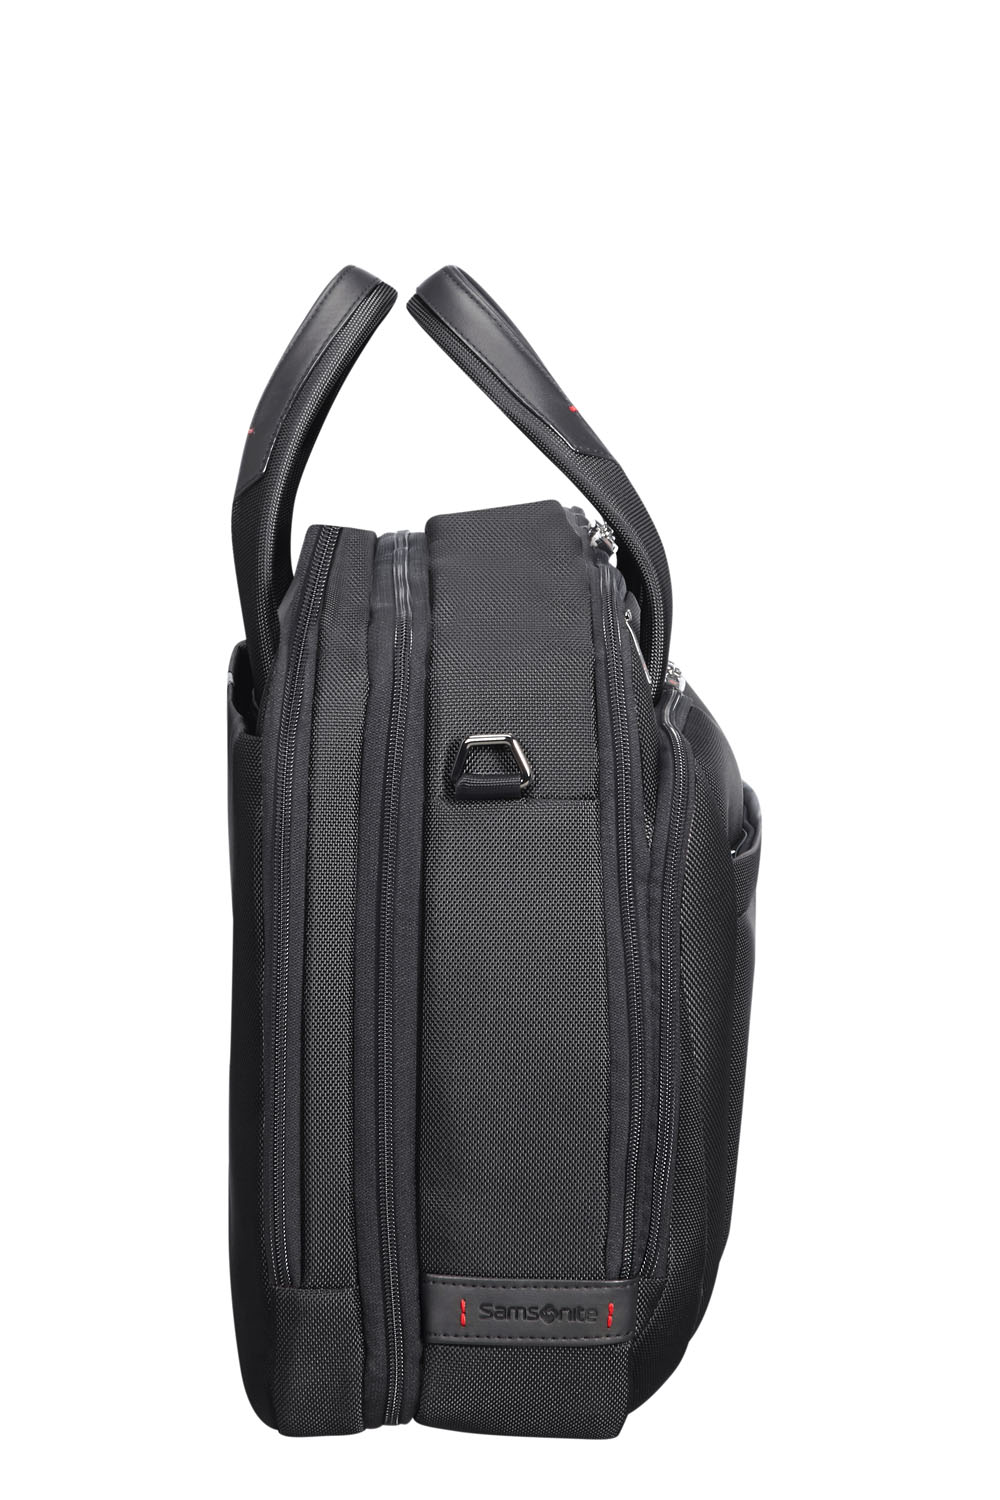 Samsonite Pro DLX 5 Laptoptasche Bailhandle 17.3", erweiterbar Black |  jetzt online kaufen auf Koffer.de ✓